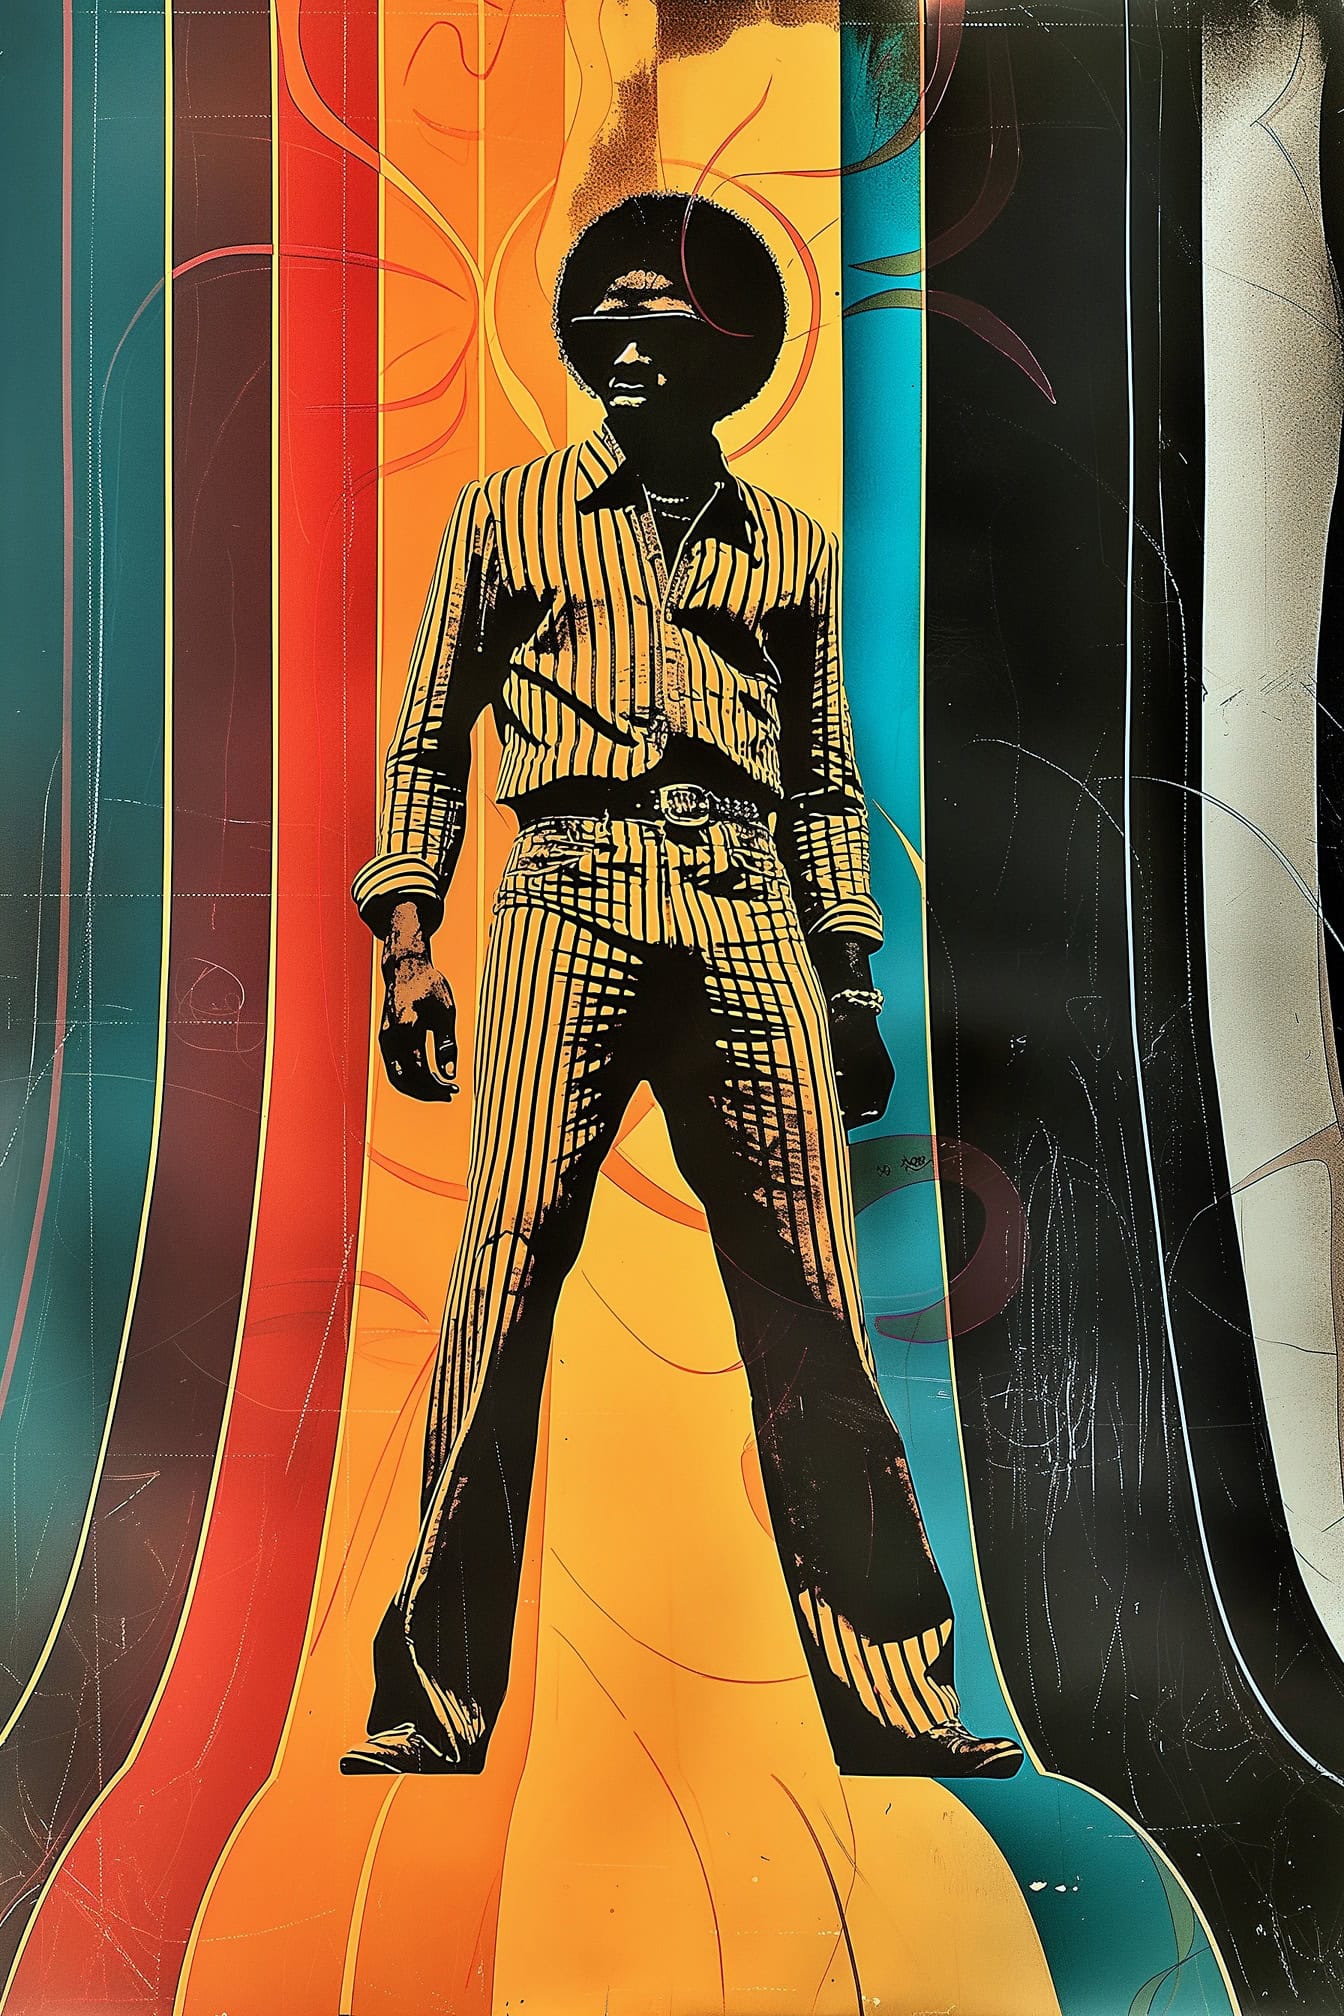 복고풍 70 년대 스타일의 포스터 화려한 벗겨진 배경과 함께 아프리카 헤어 스타일을 가진 남자